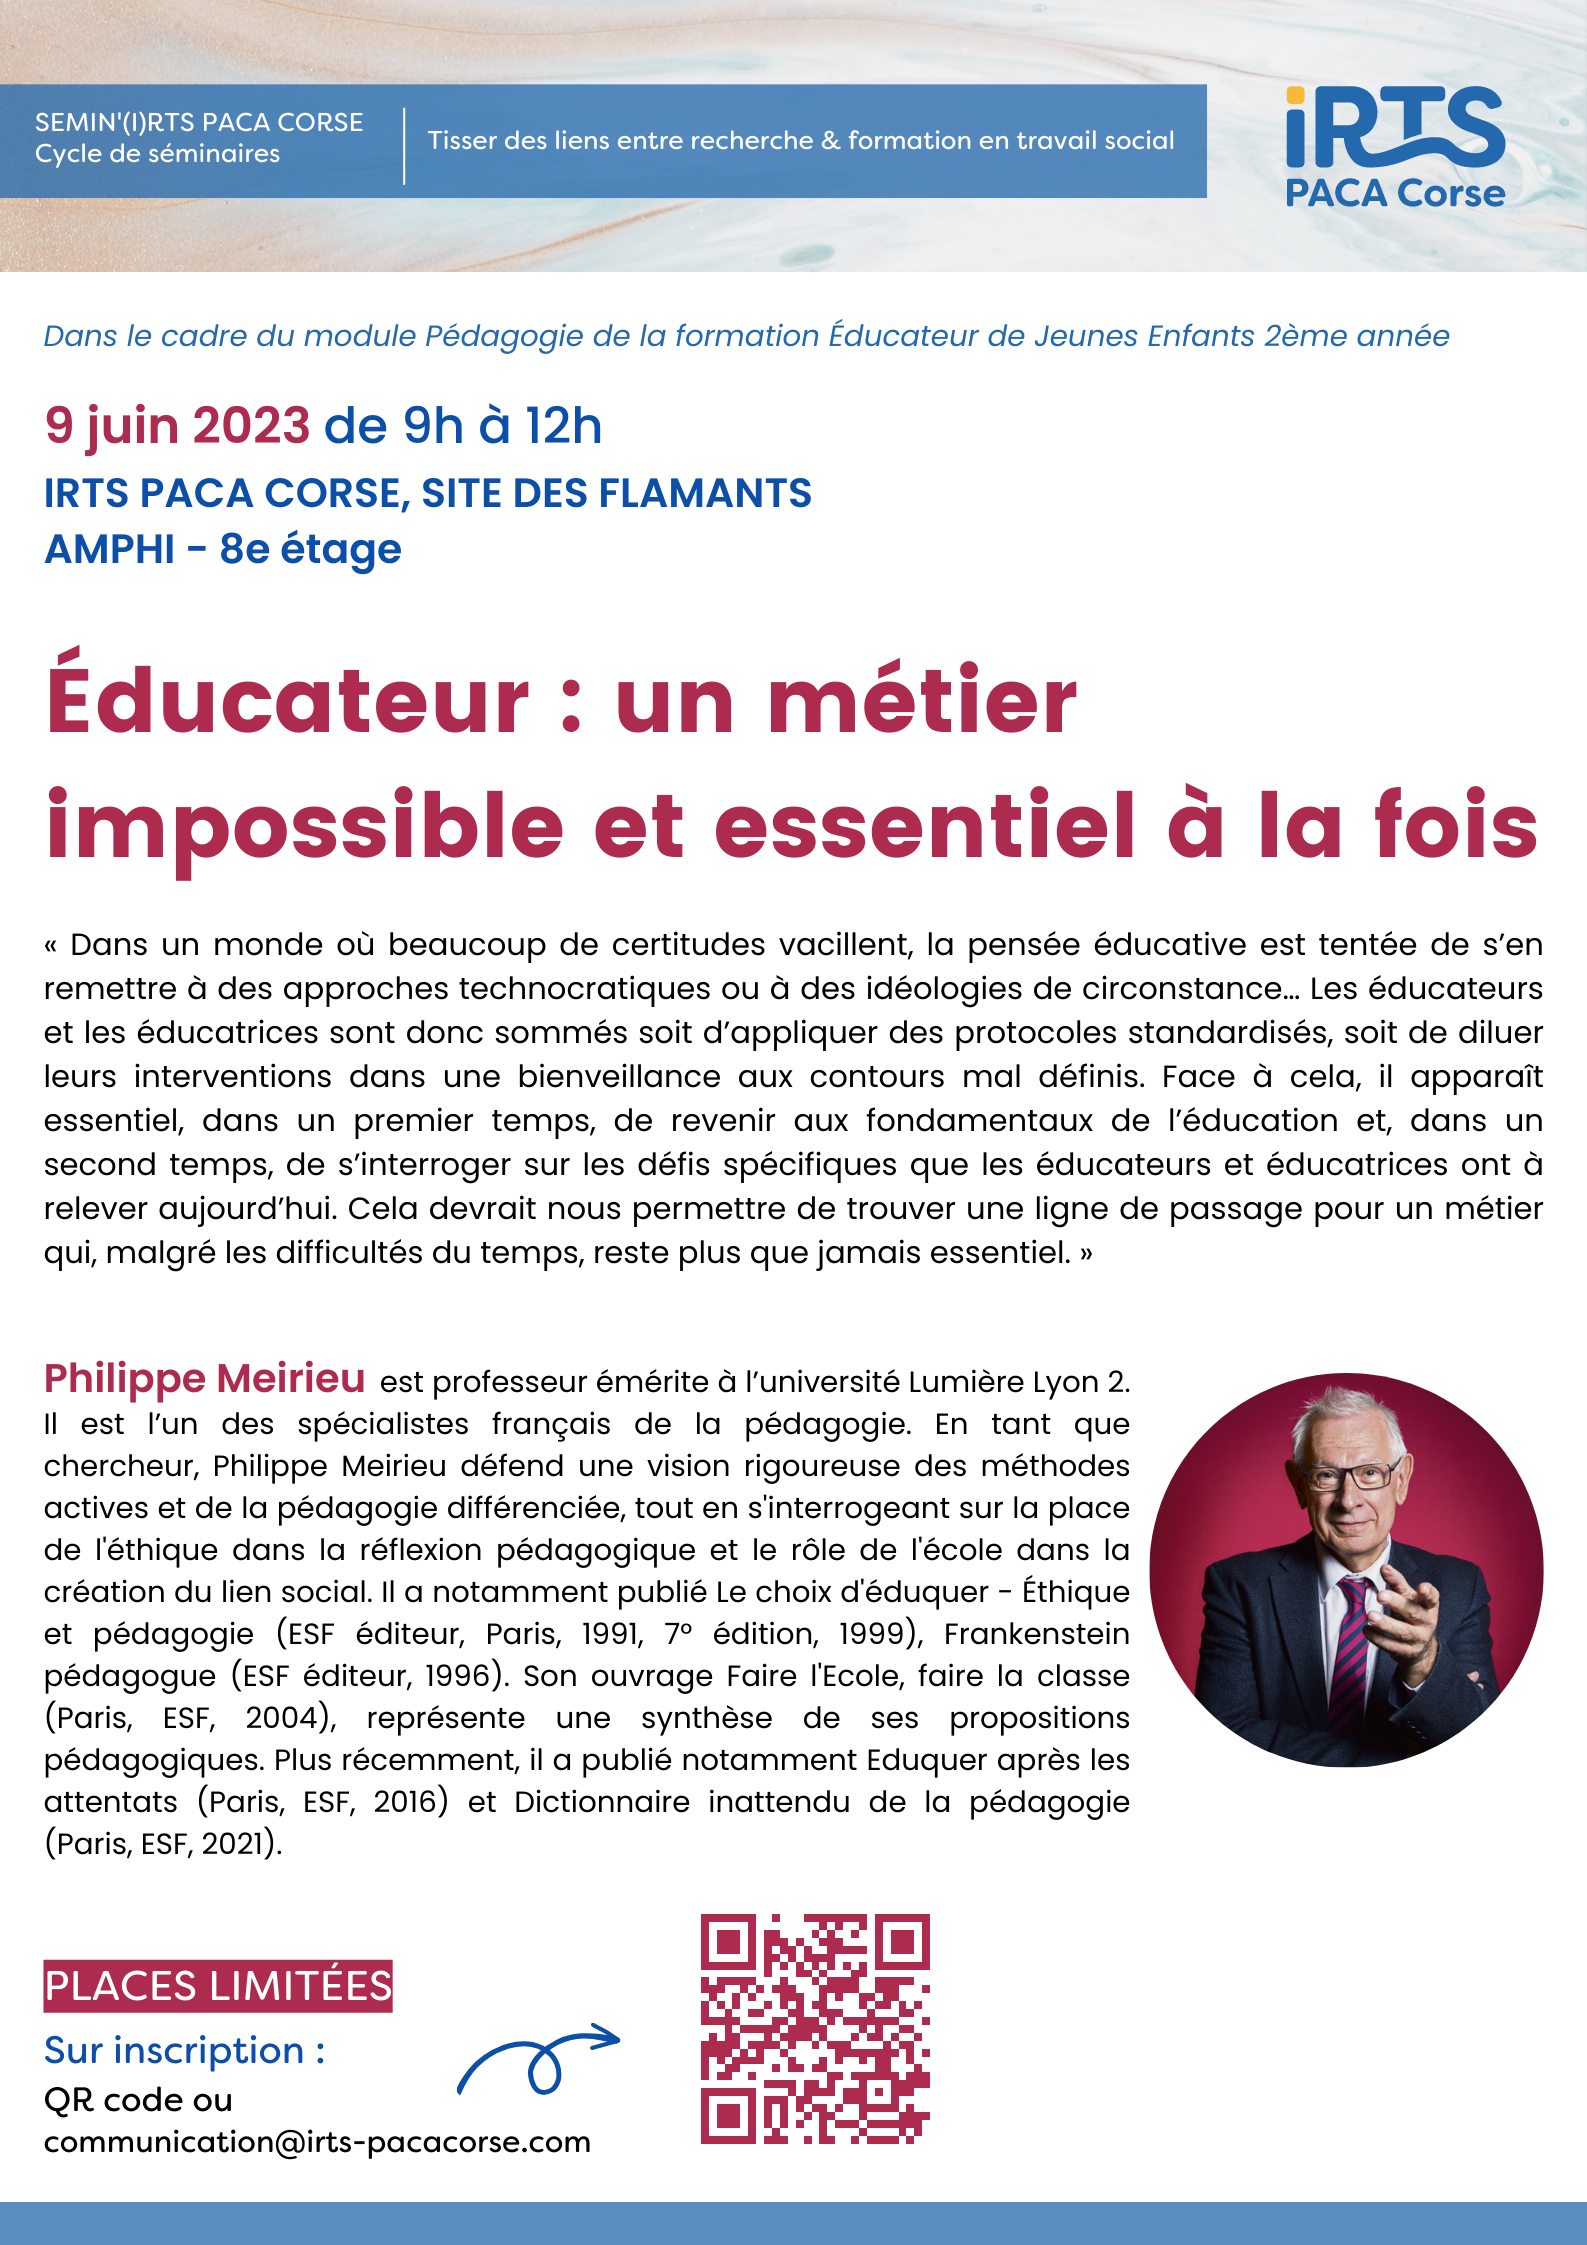 Cycle de séminaires : "Educateur: un métier impossible et essentiel à la fois". P. Meirieu